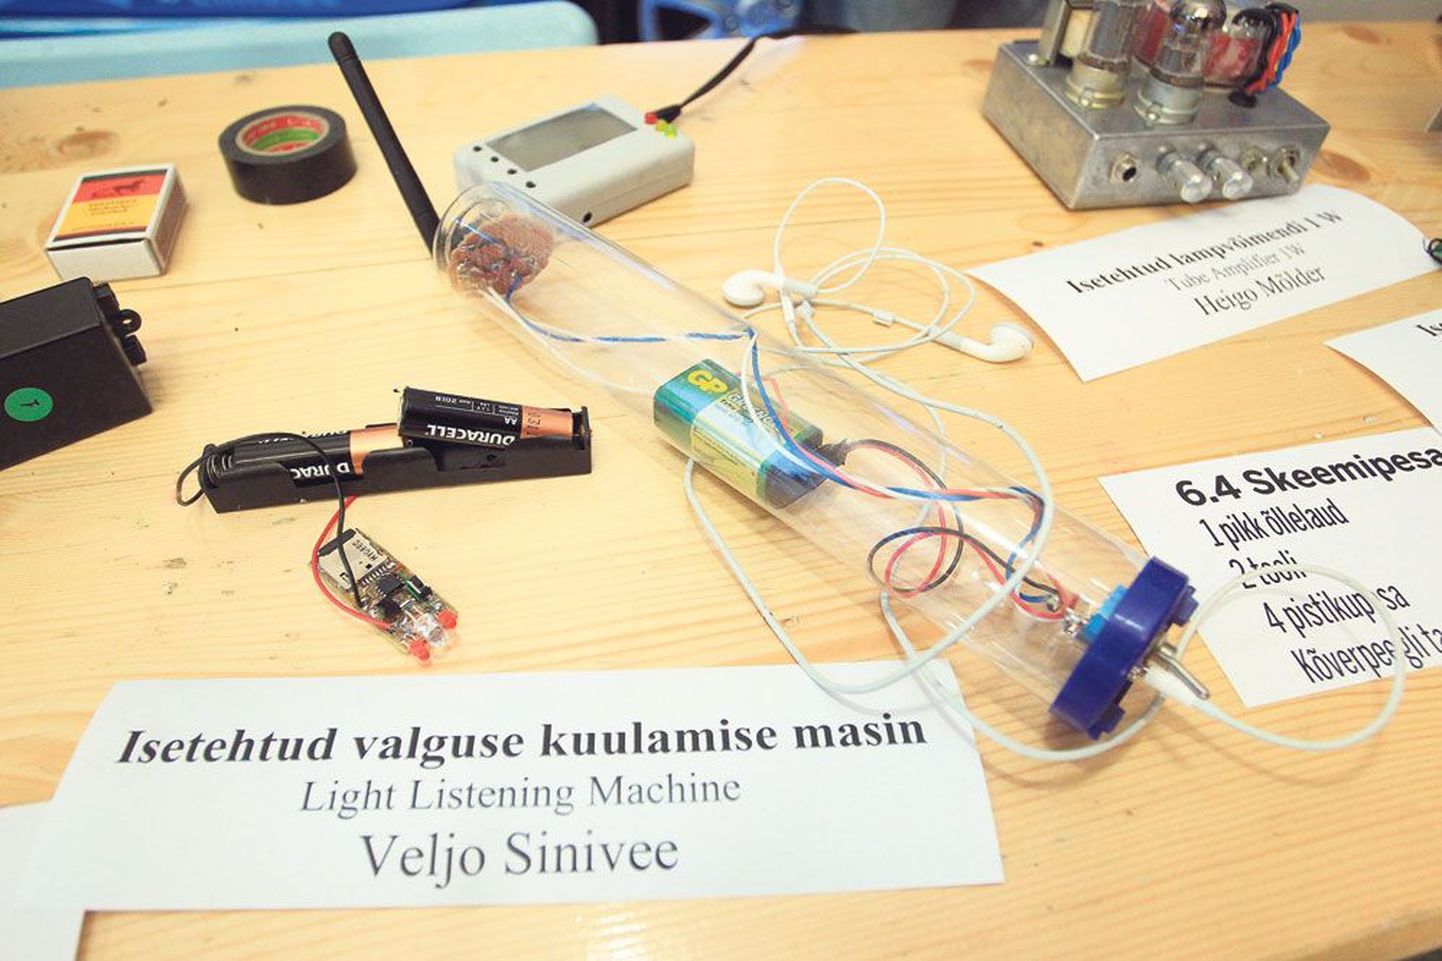 Tallinlaste Skeemipesa letile olid laotud mitmed unikaalsed aparaadid. Nende hulgas oli kesksel kohal ise­tehtud valguse kuulamise masin, mille autor on Veljo Sinivee.